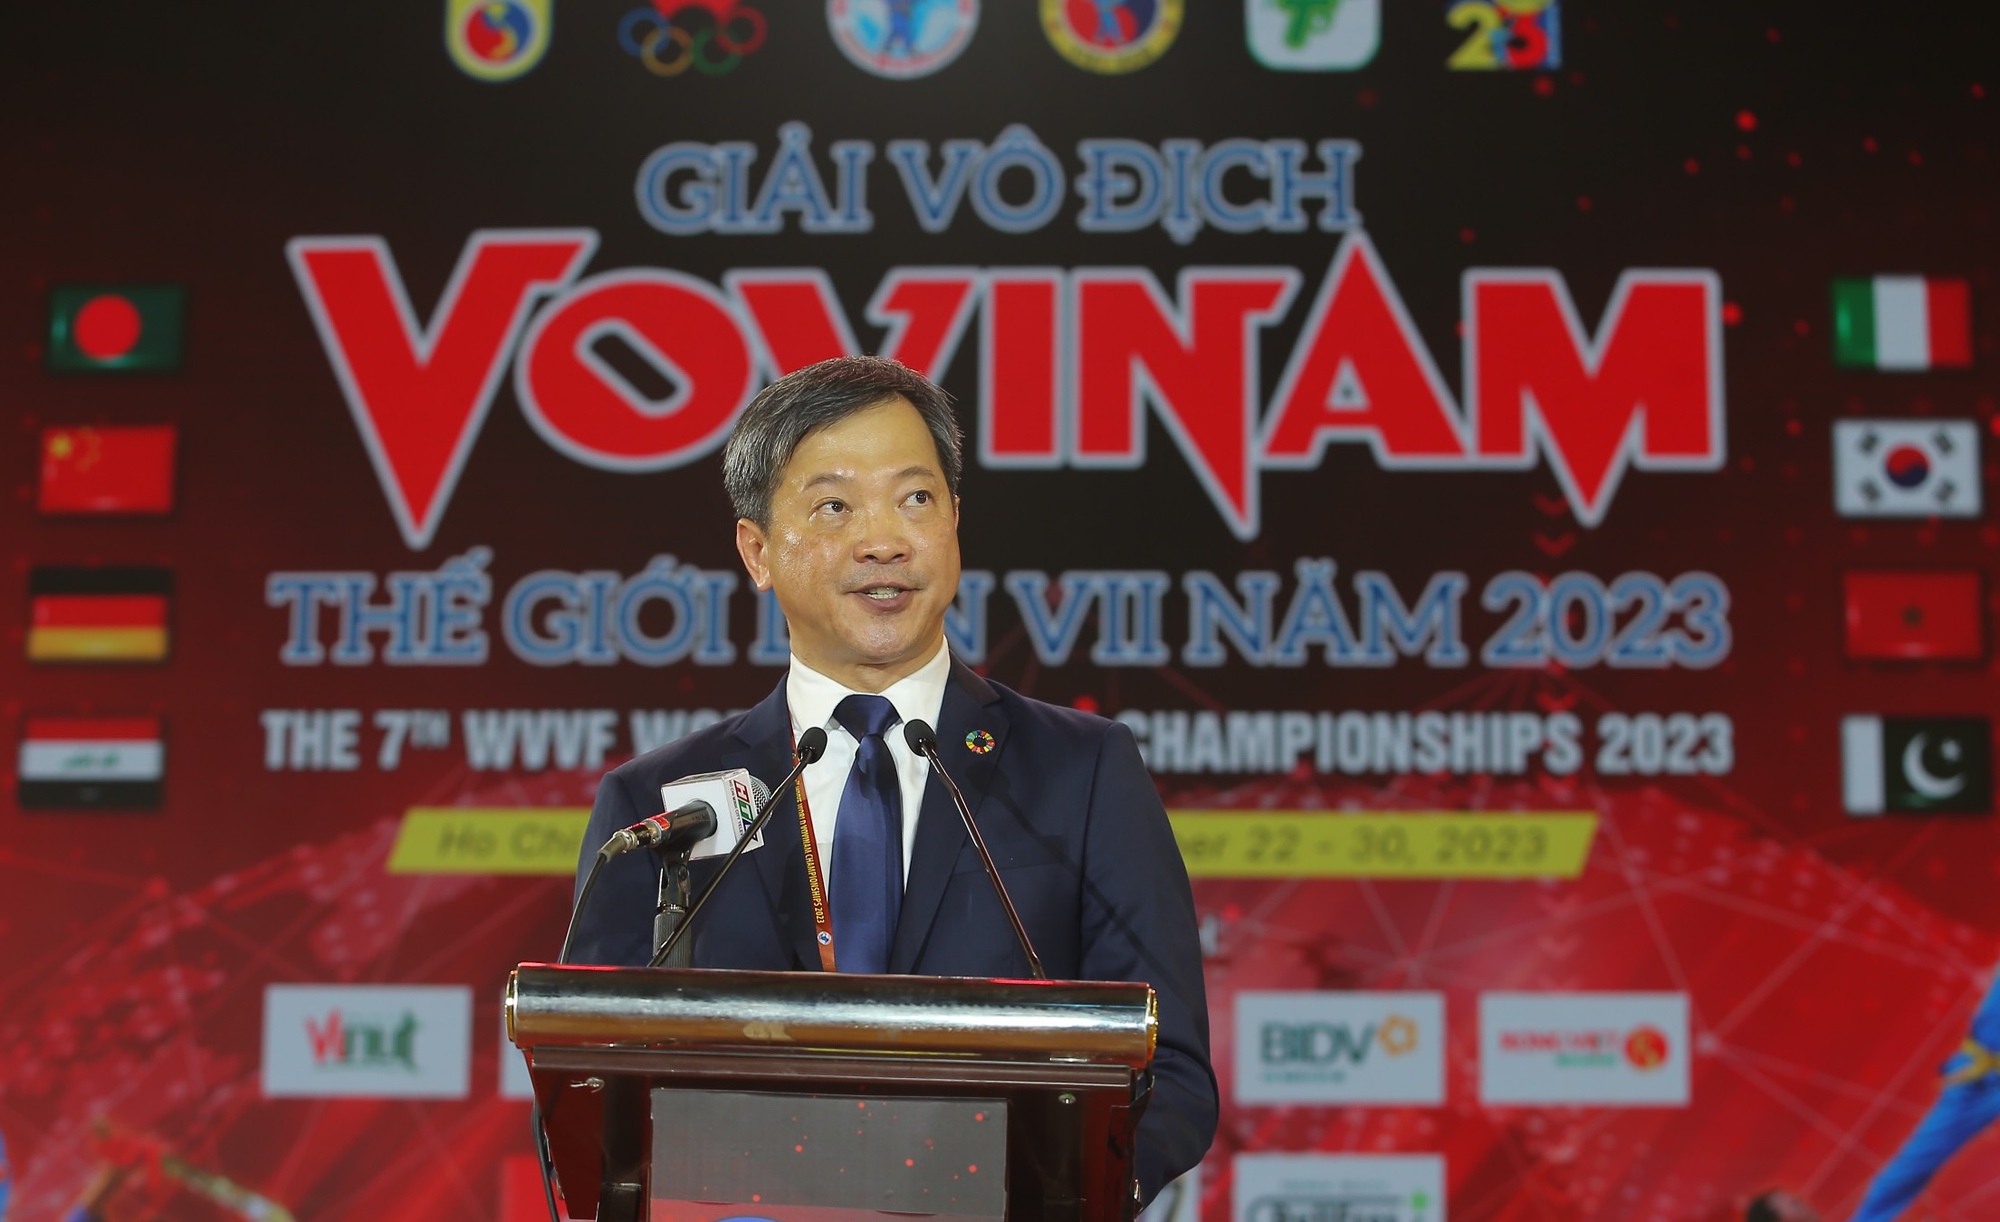 Giải vô địch vovinam thế giới 2023 chính thức khởi tranh tại Việt Nam - Ảnh 4.